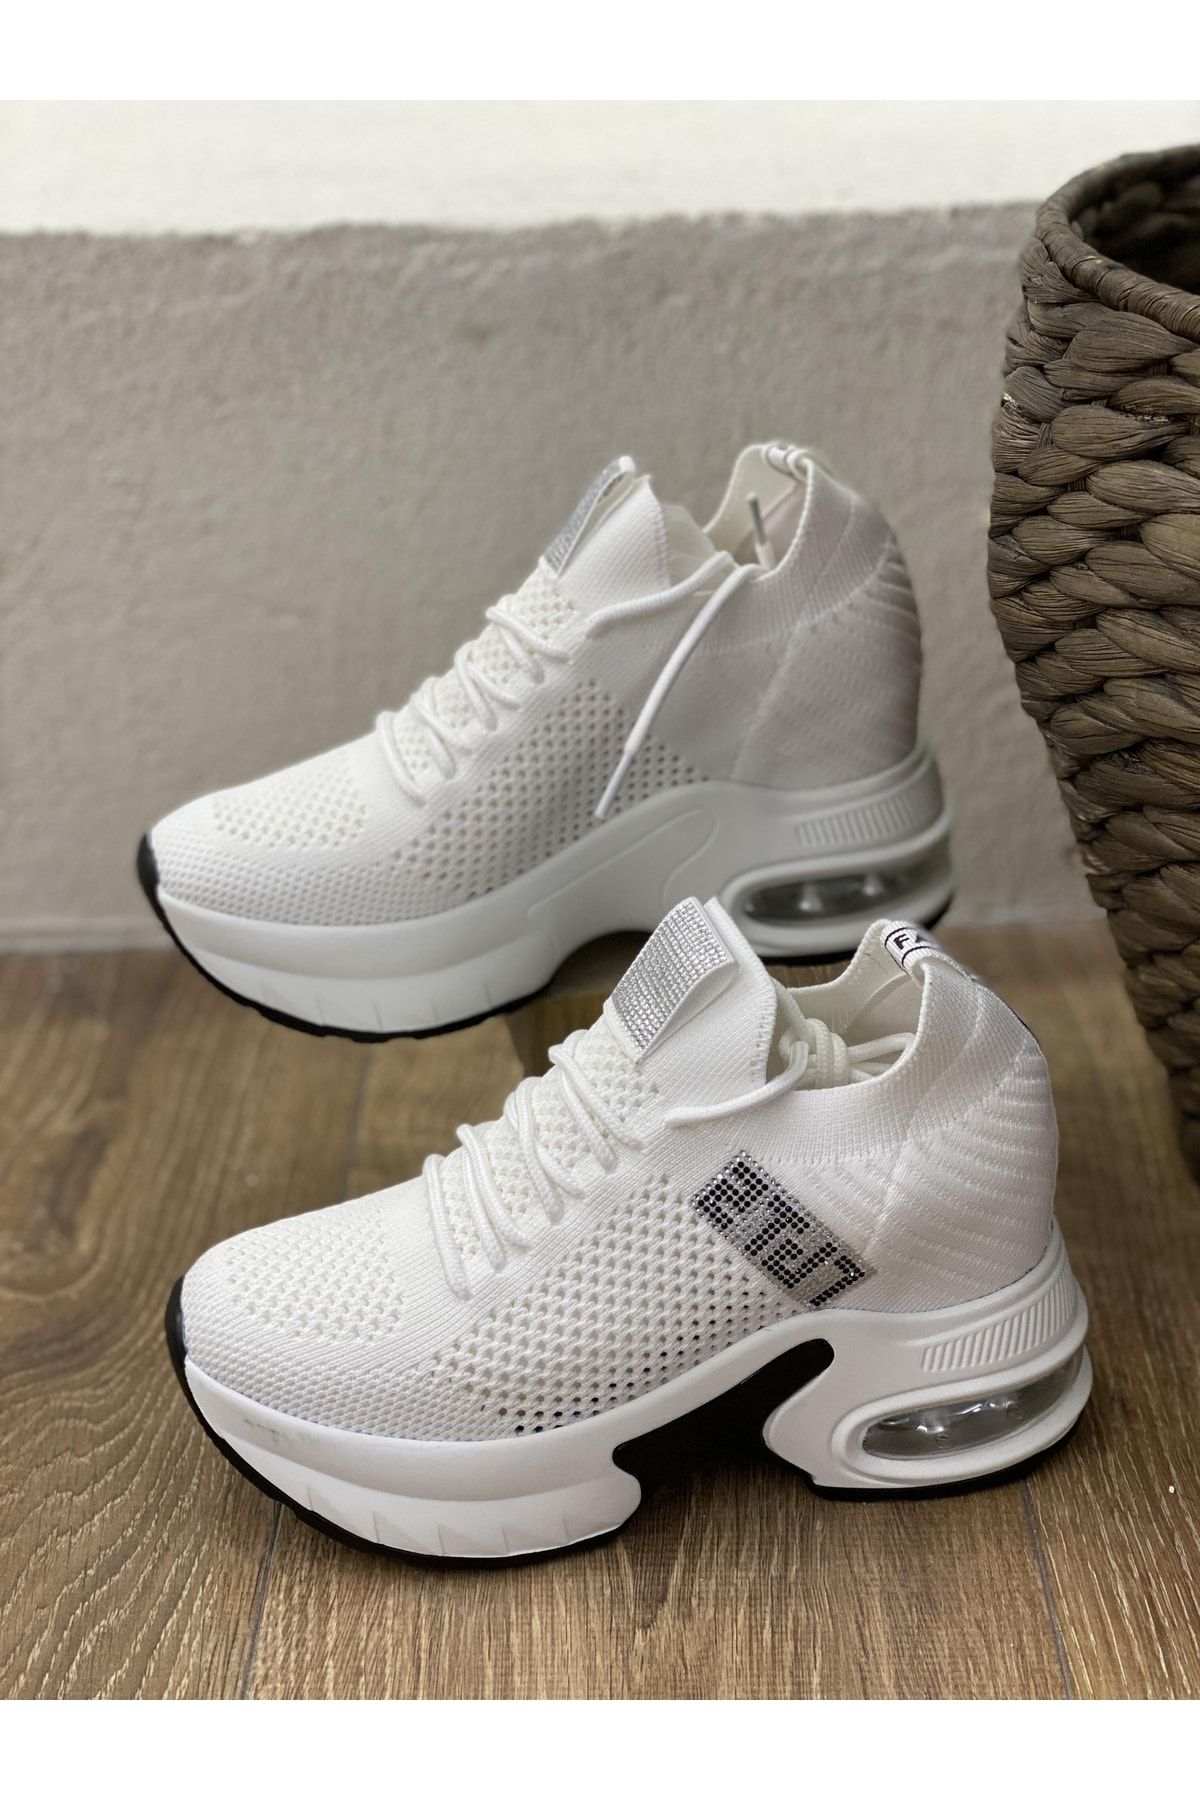 Guja 23y300-1 Yanı Taş Detay 9cm Dolgu Taban Triko Sneaker Spor Ayakkabı